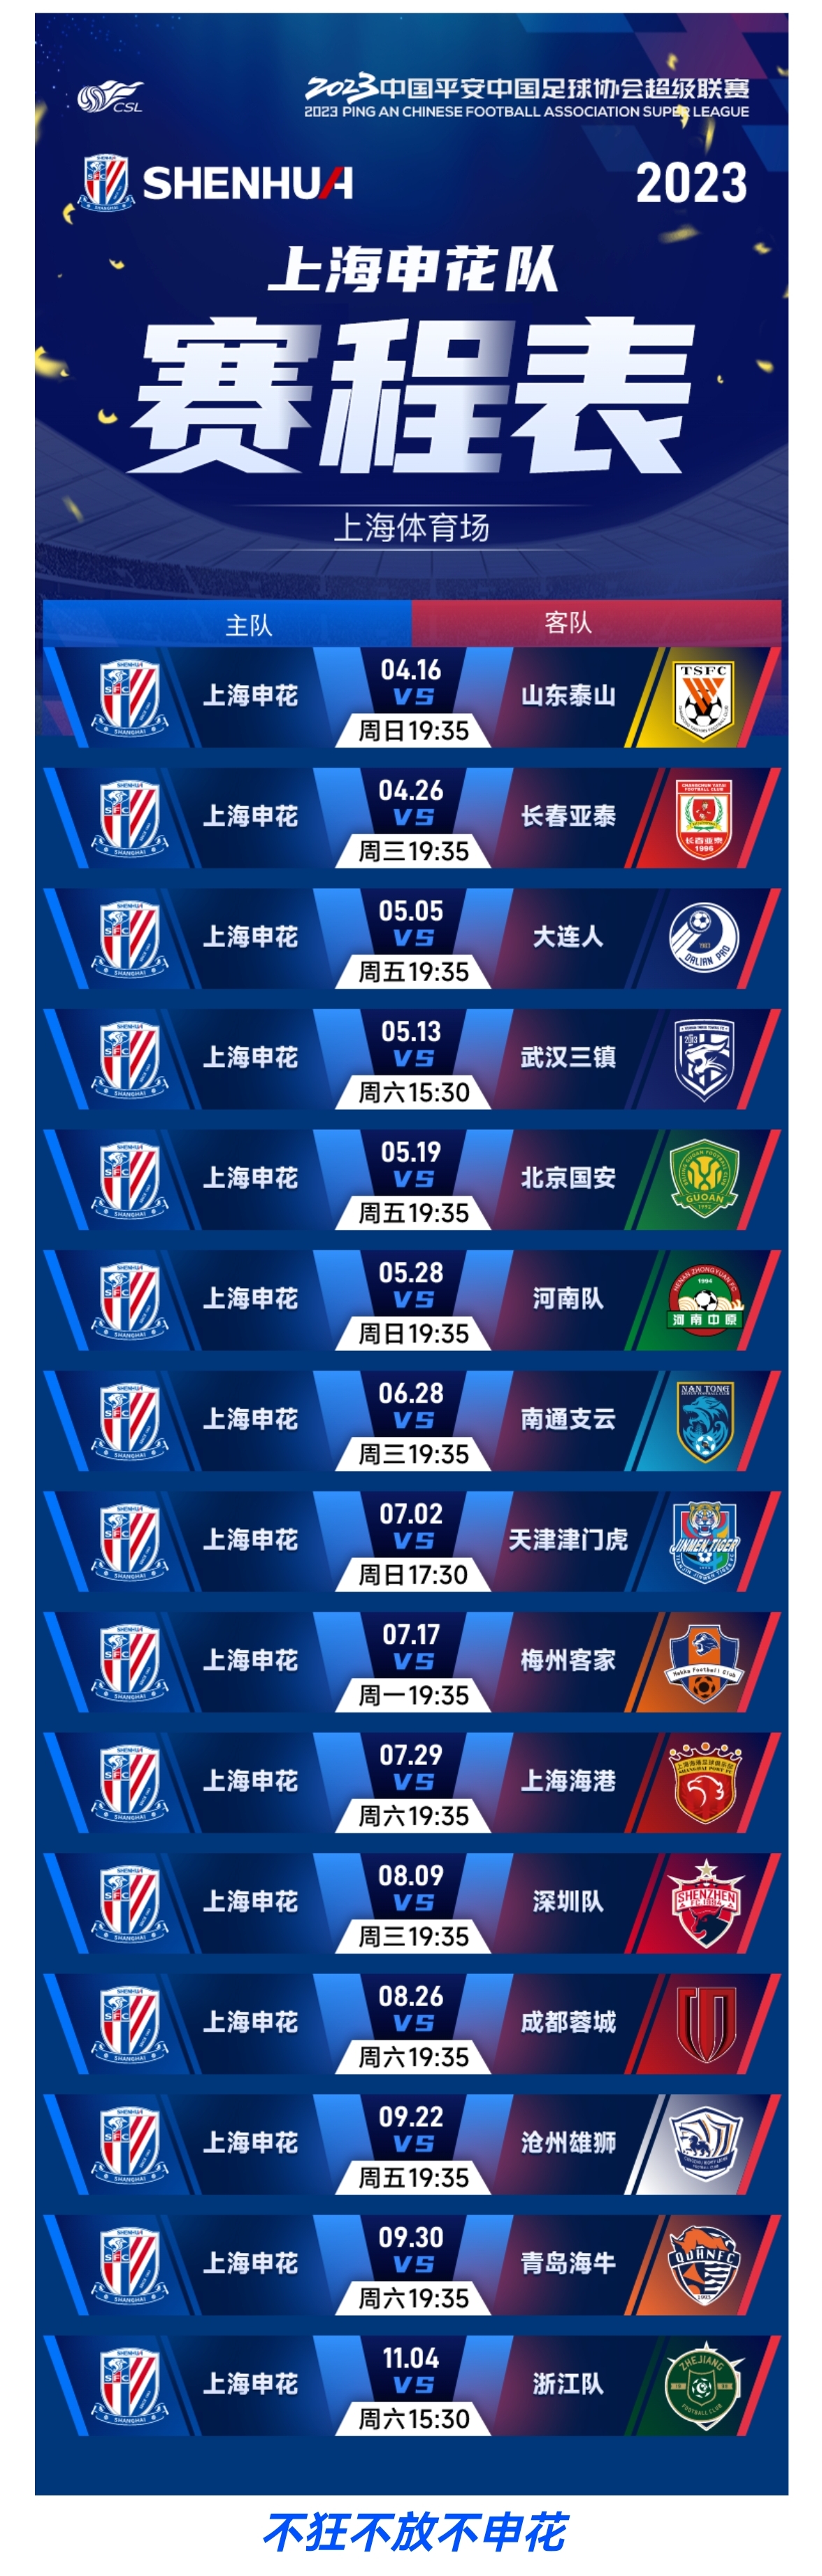 2022中超联赛第19-20轮（补赛）、 第23-25轮上海申花对阵日程表_PP视频体育频道